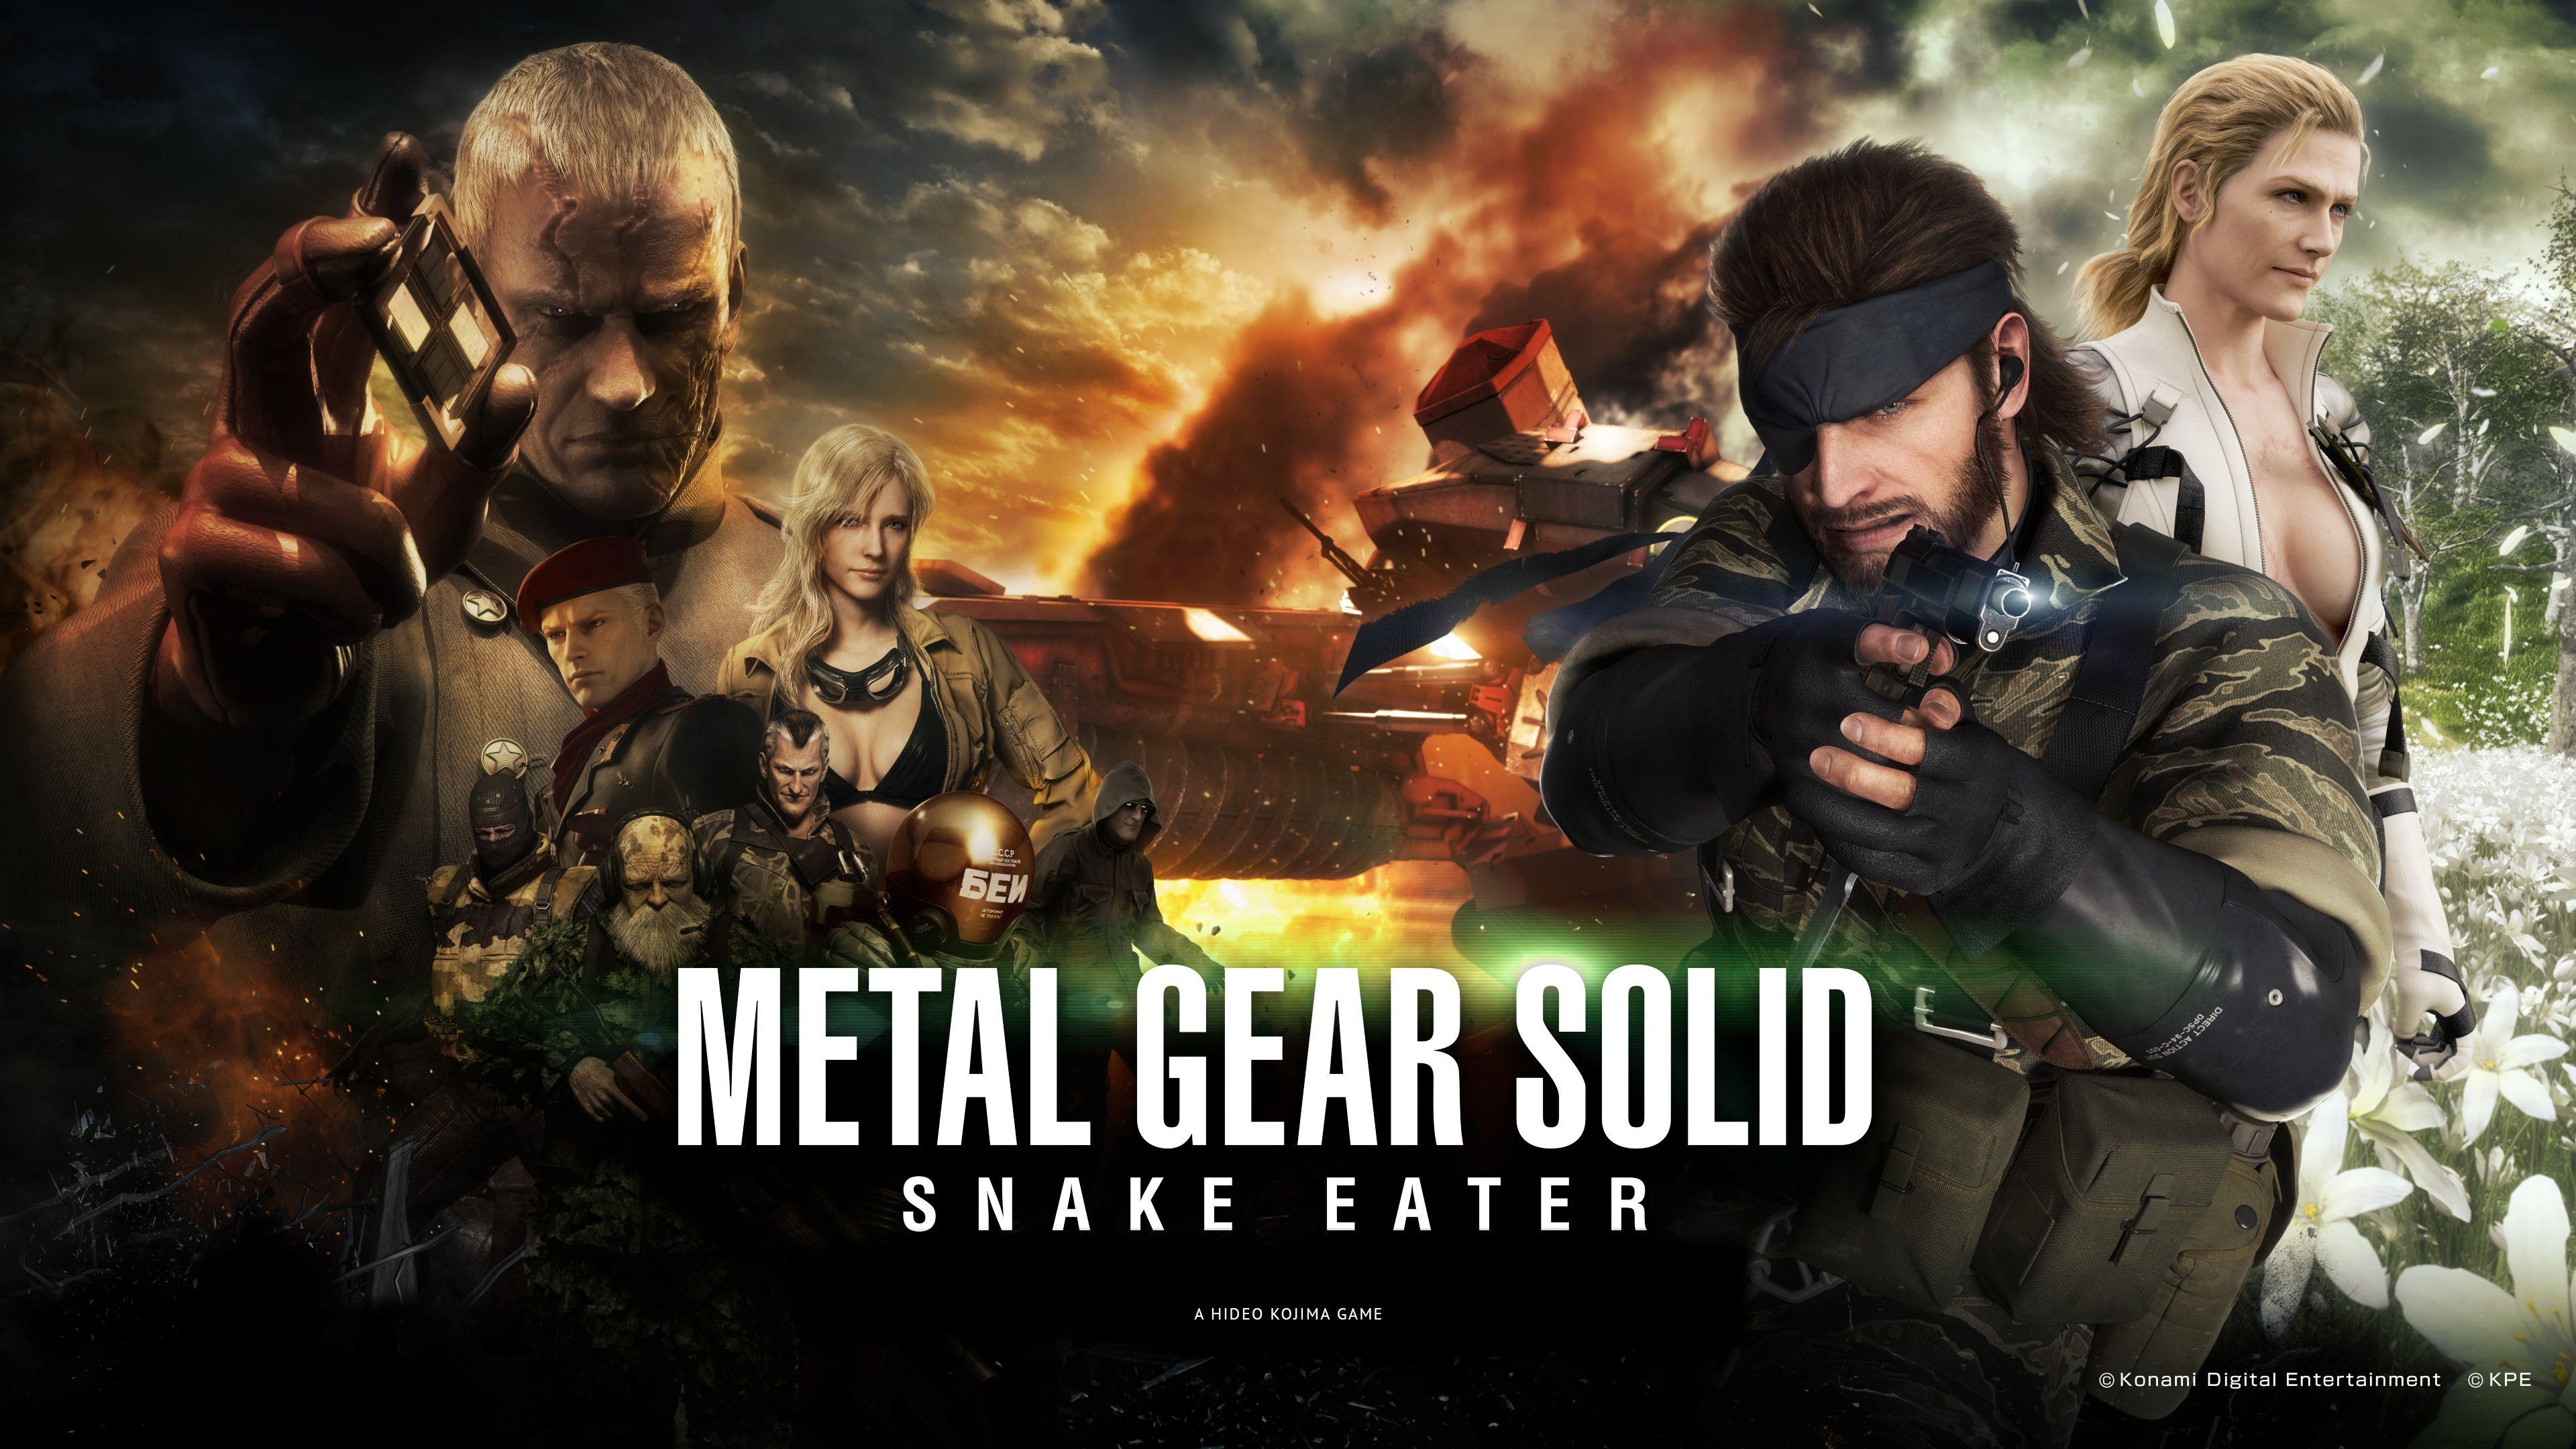 Metal Gear Solid Snake Eater Pachislot Wallpaper #MetalGearSolid